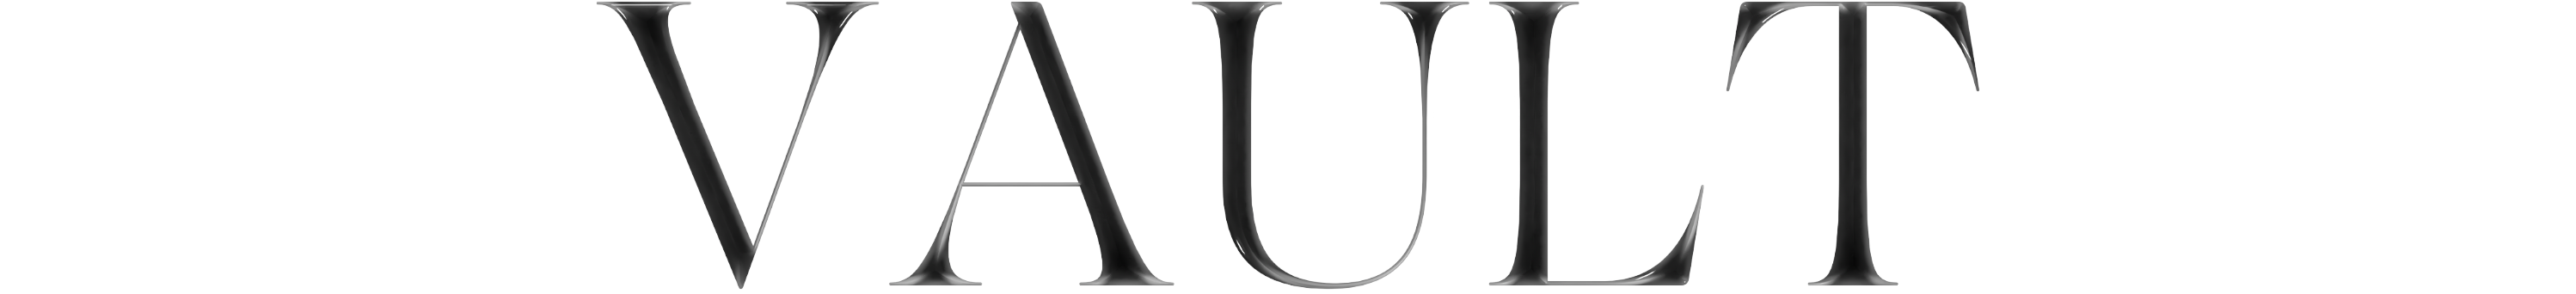 Auroboros logo second line